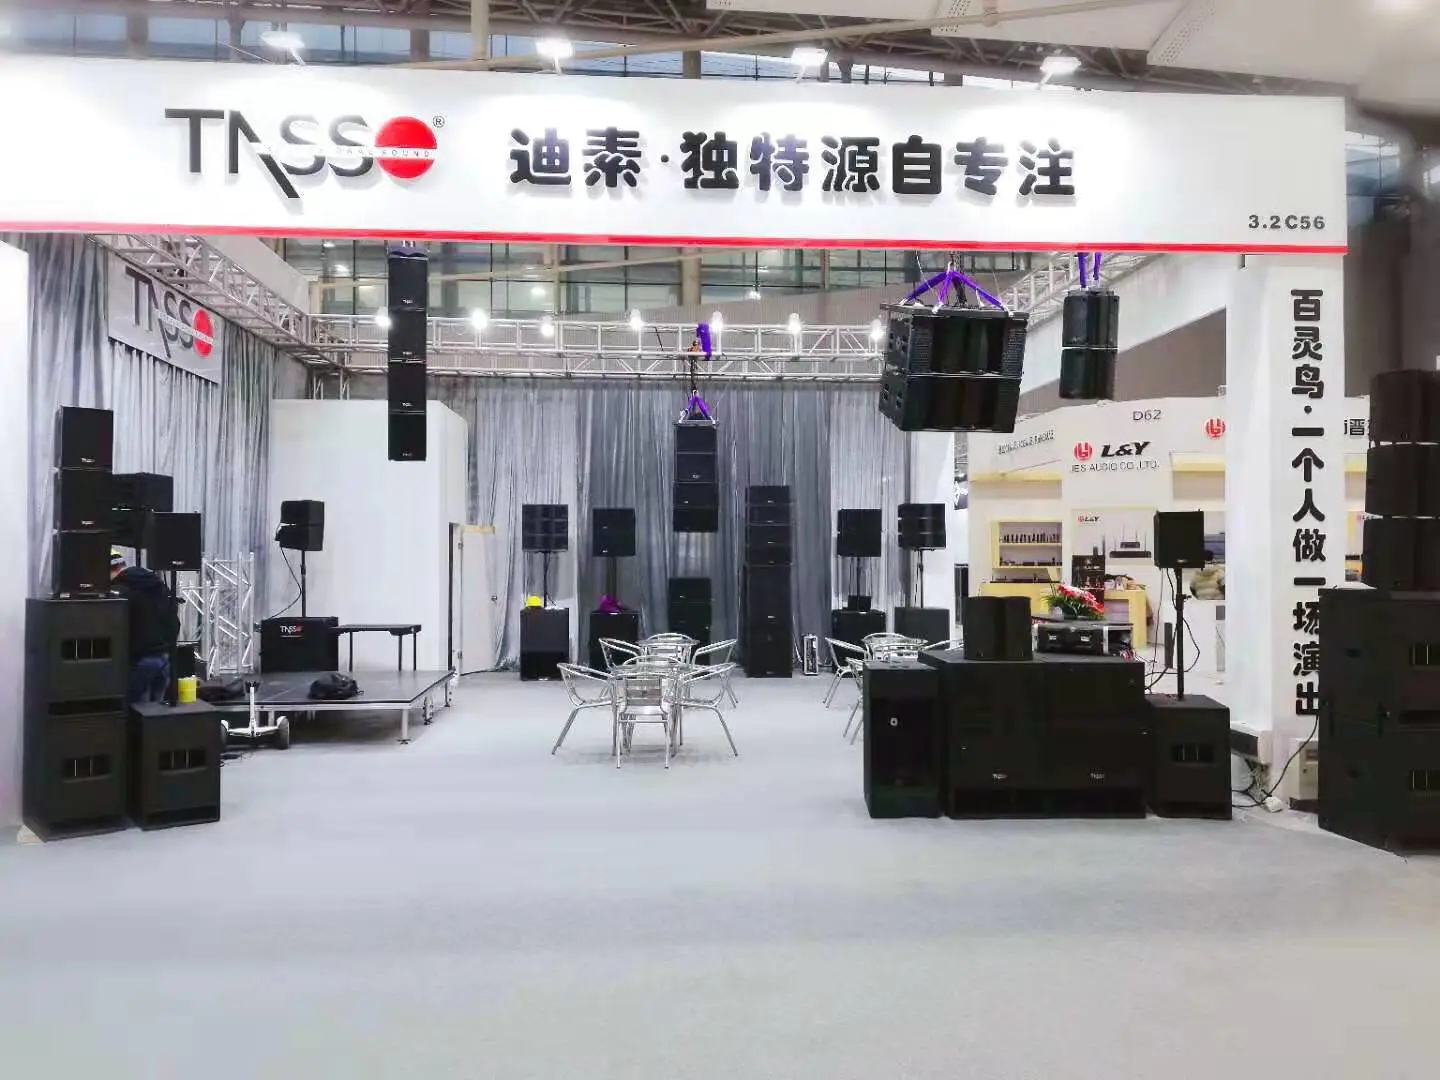 2019 Guangzhou Prolight & Sound exhibition